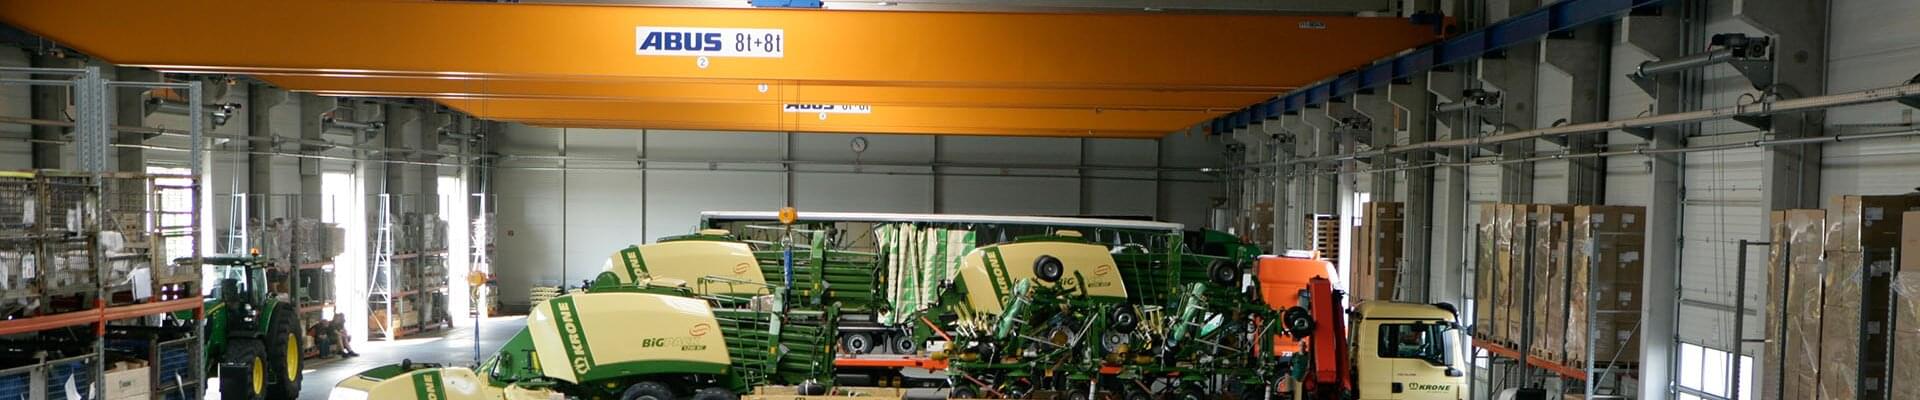 Grúa con capacidad de carga de 8 t y 8 t en nave de producción de tecnología de maquinaria agrícola en Alemania